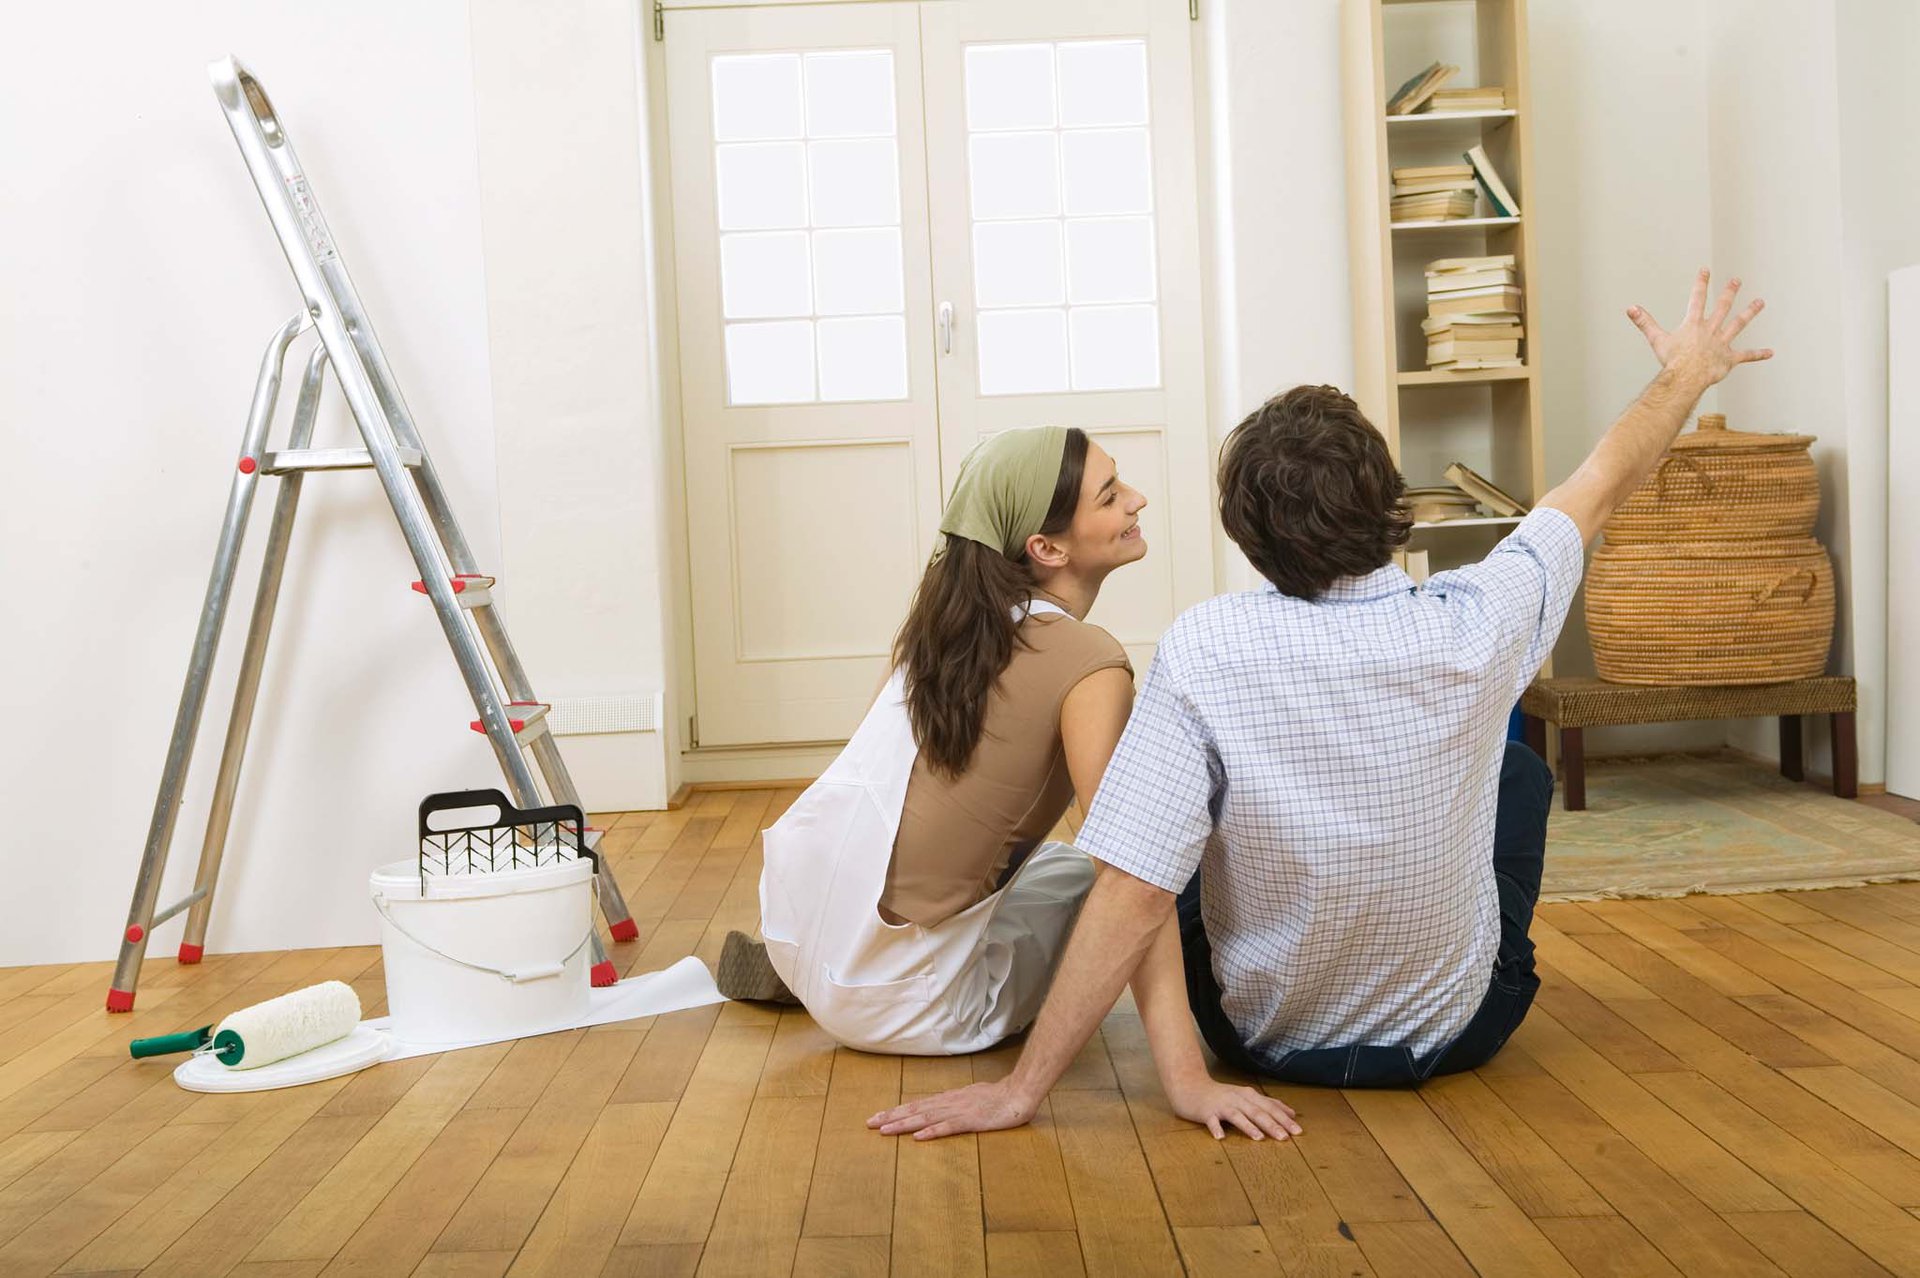 Дом ремонт кредит отказаться от страховки после получения кредита в совкомбанке можно